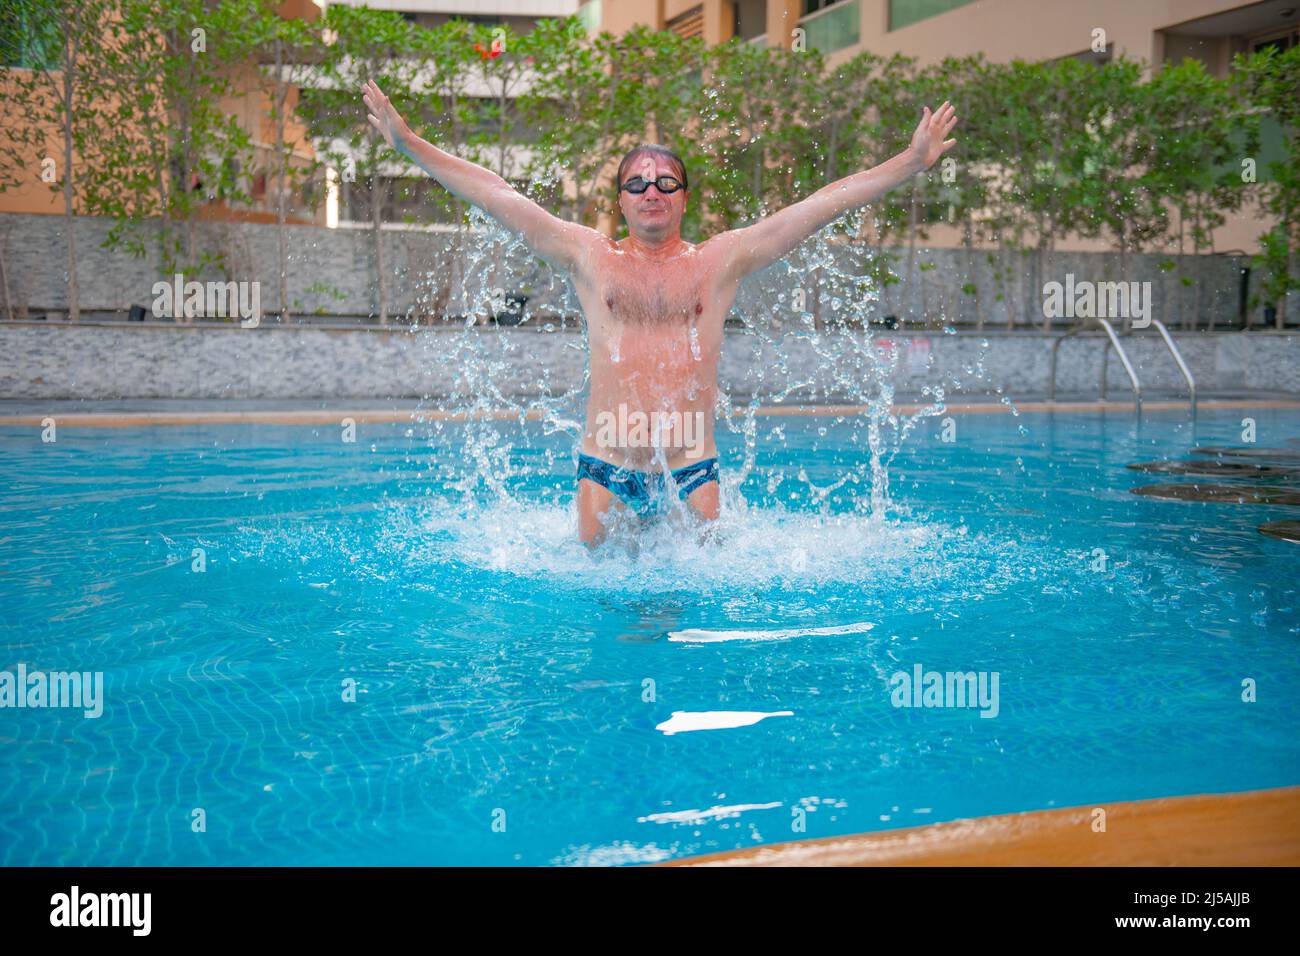 nuotatore sportivo che salta in piscina Foto Stock